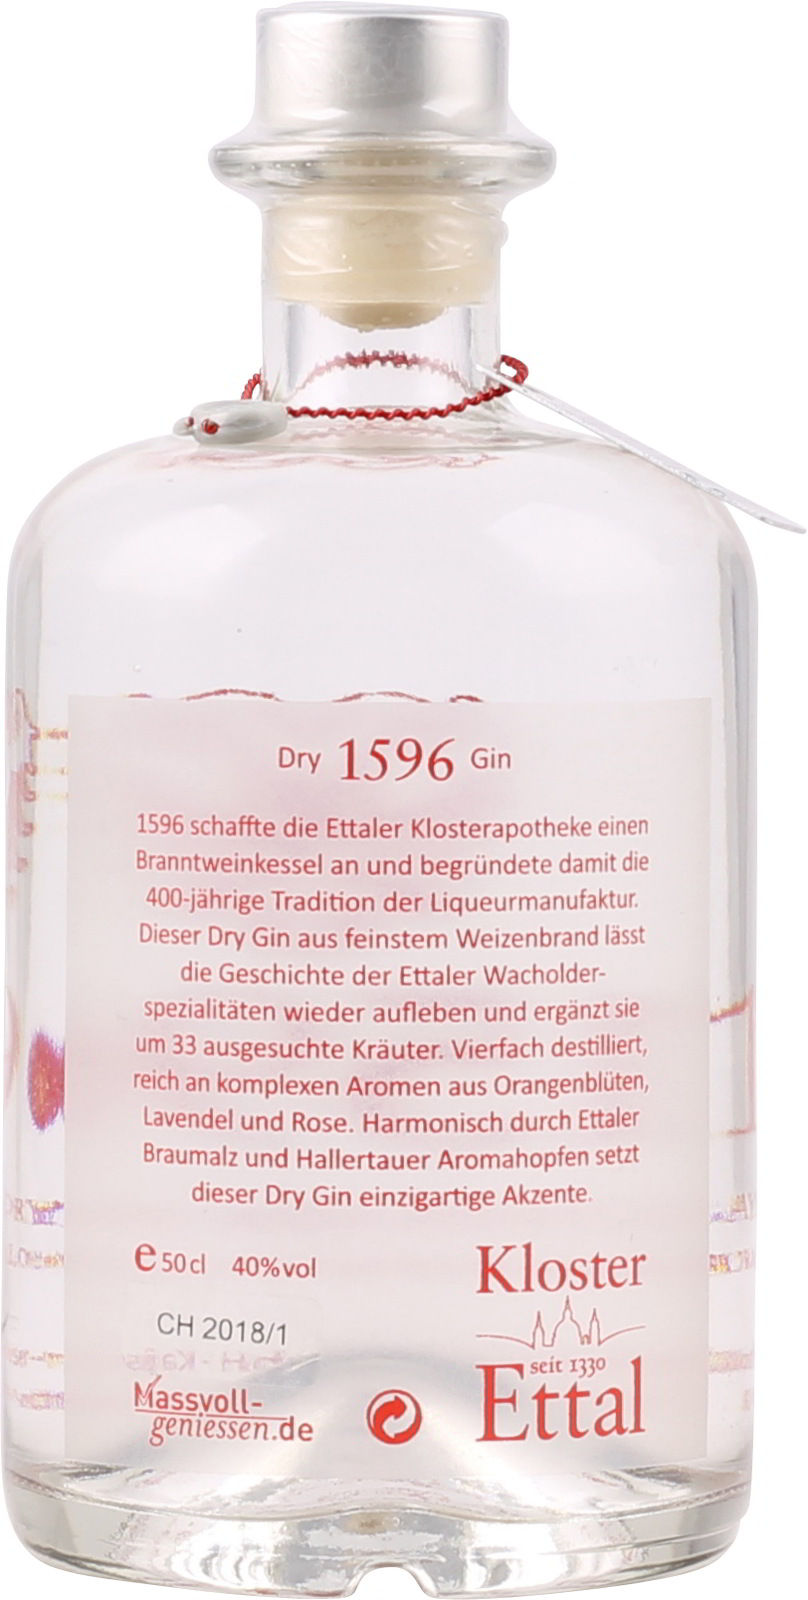 1596 Ettaler Gin Bayerischer Dry Vol. 0,5 40 ei % Liter